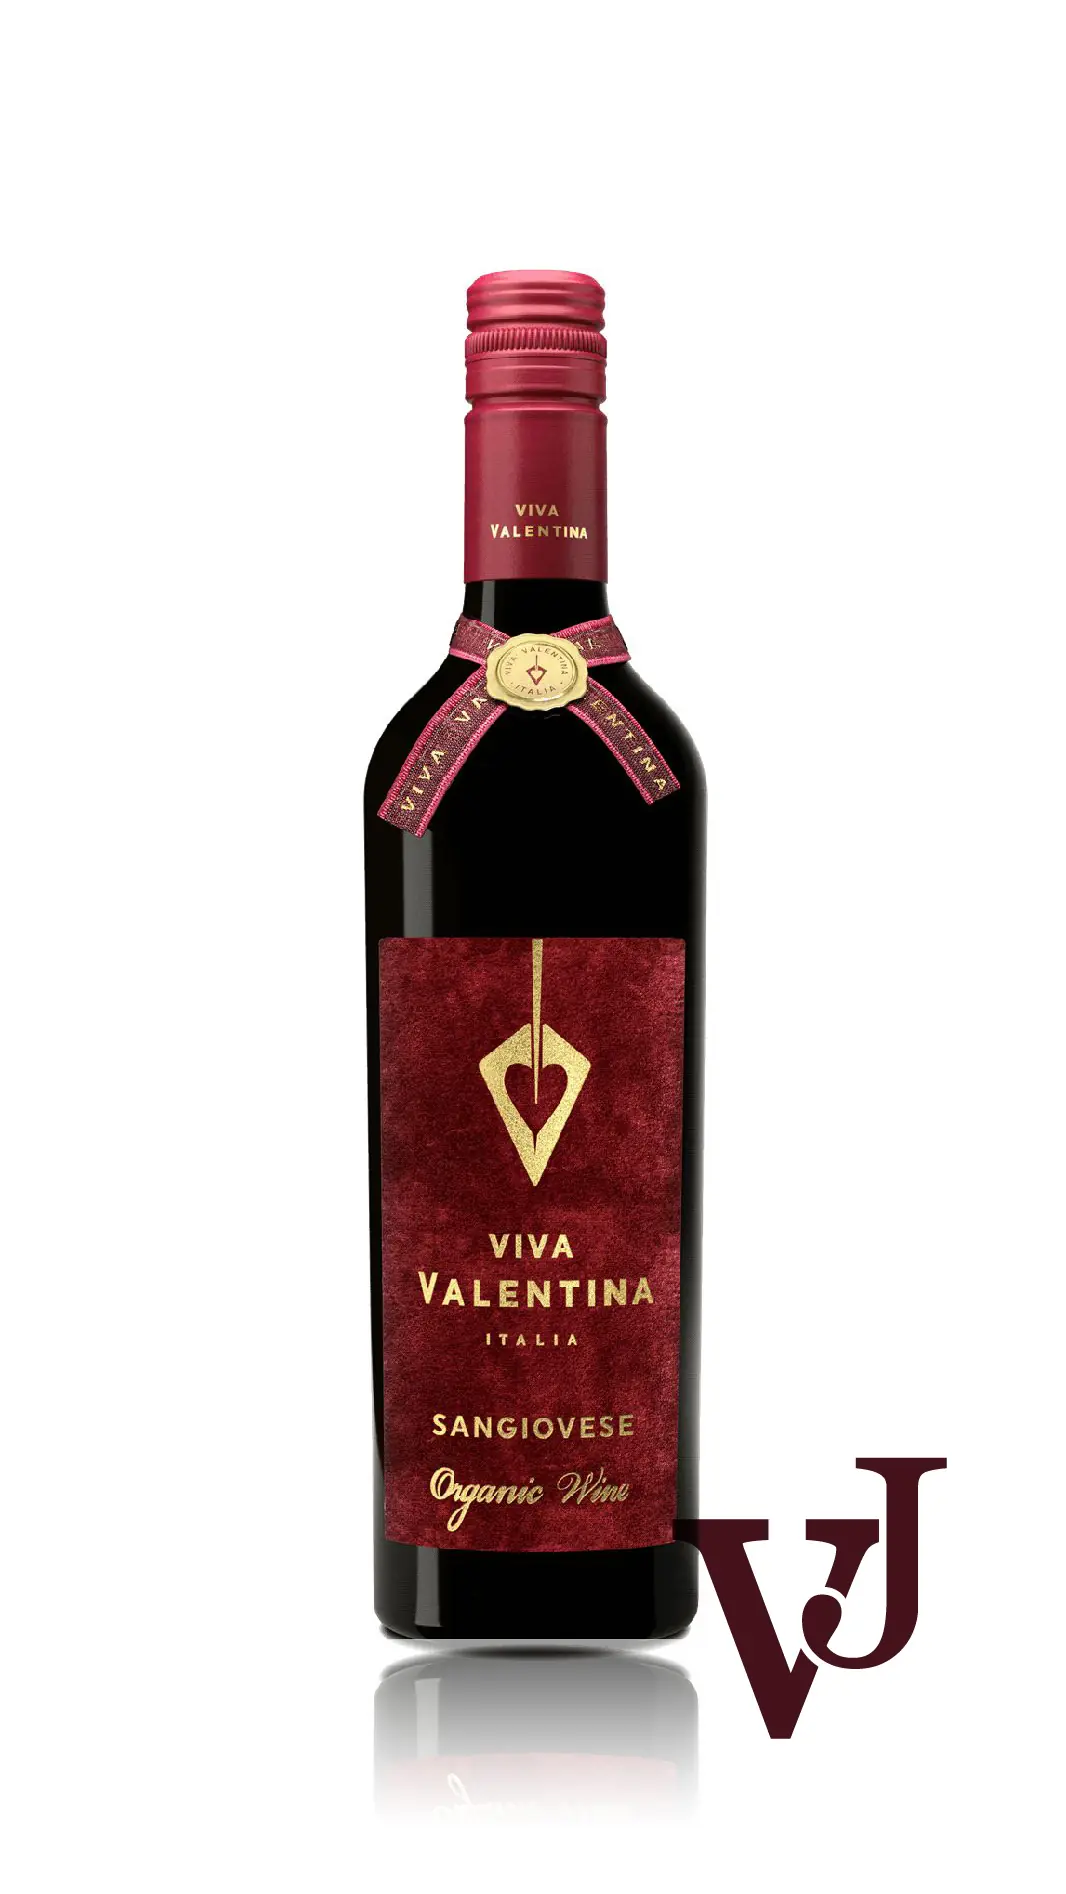 Rött Vin - Villa Valentina Sangiovese artikel nummer 7659801 från producenten Iconic Wines från området Apulien beläget i Italien. - Vinjournalen.se